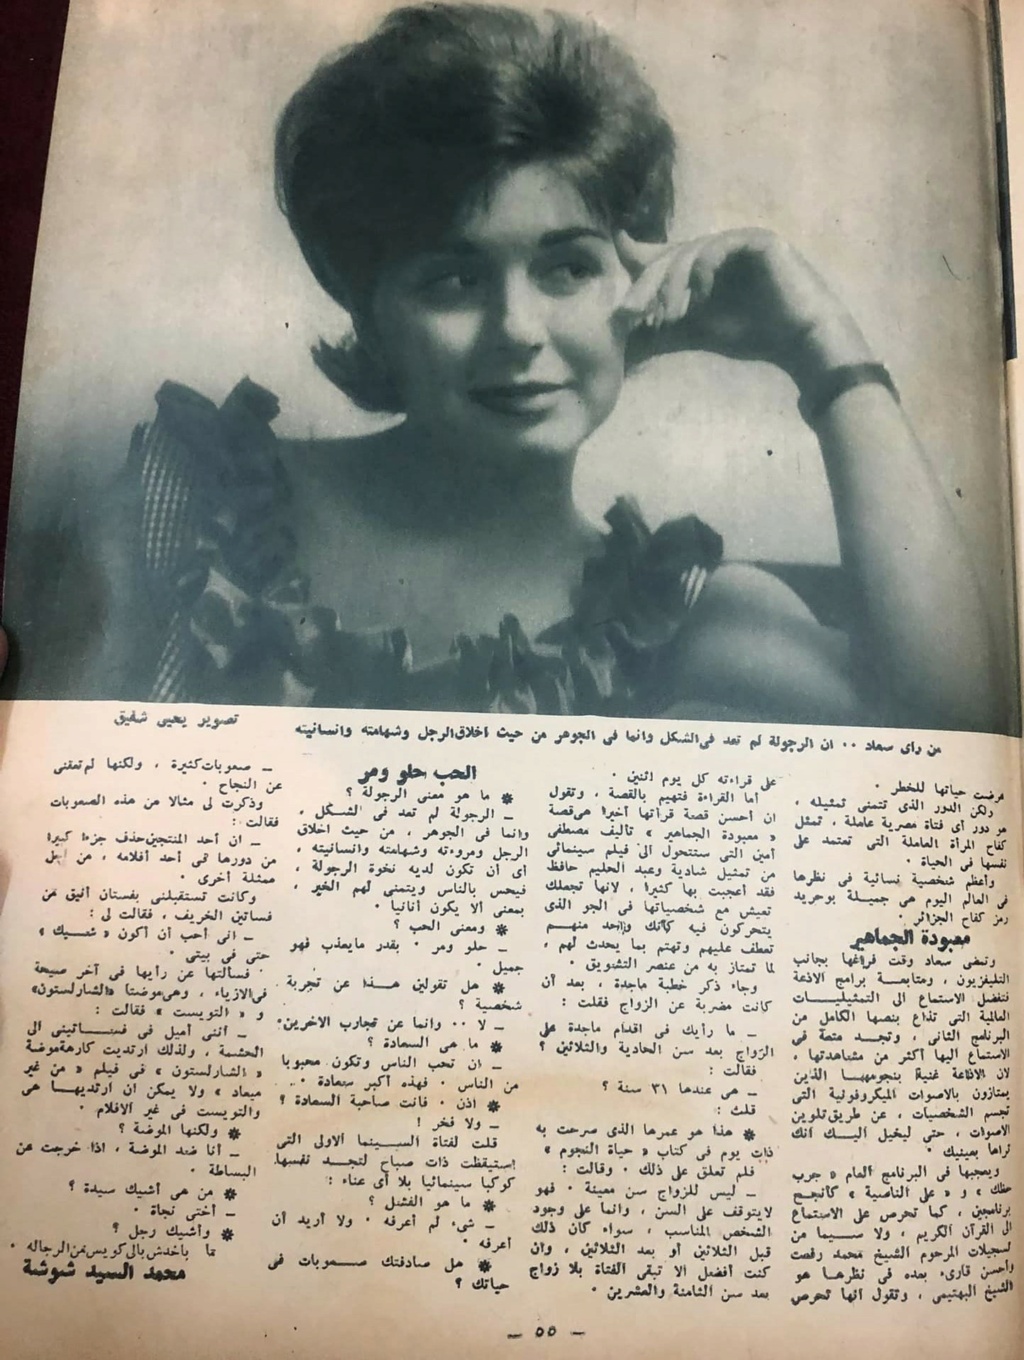 1962 - حوار صحفي : لا تواليت .. ولا مجوهرات 1962 م 2463